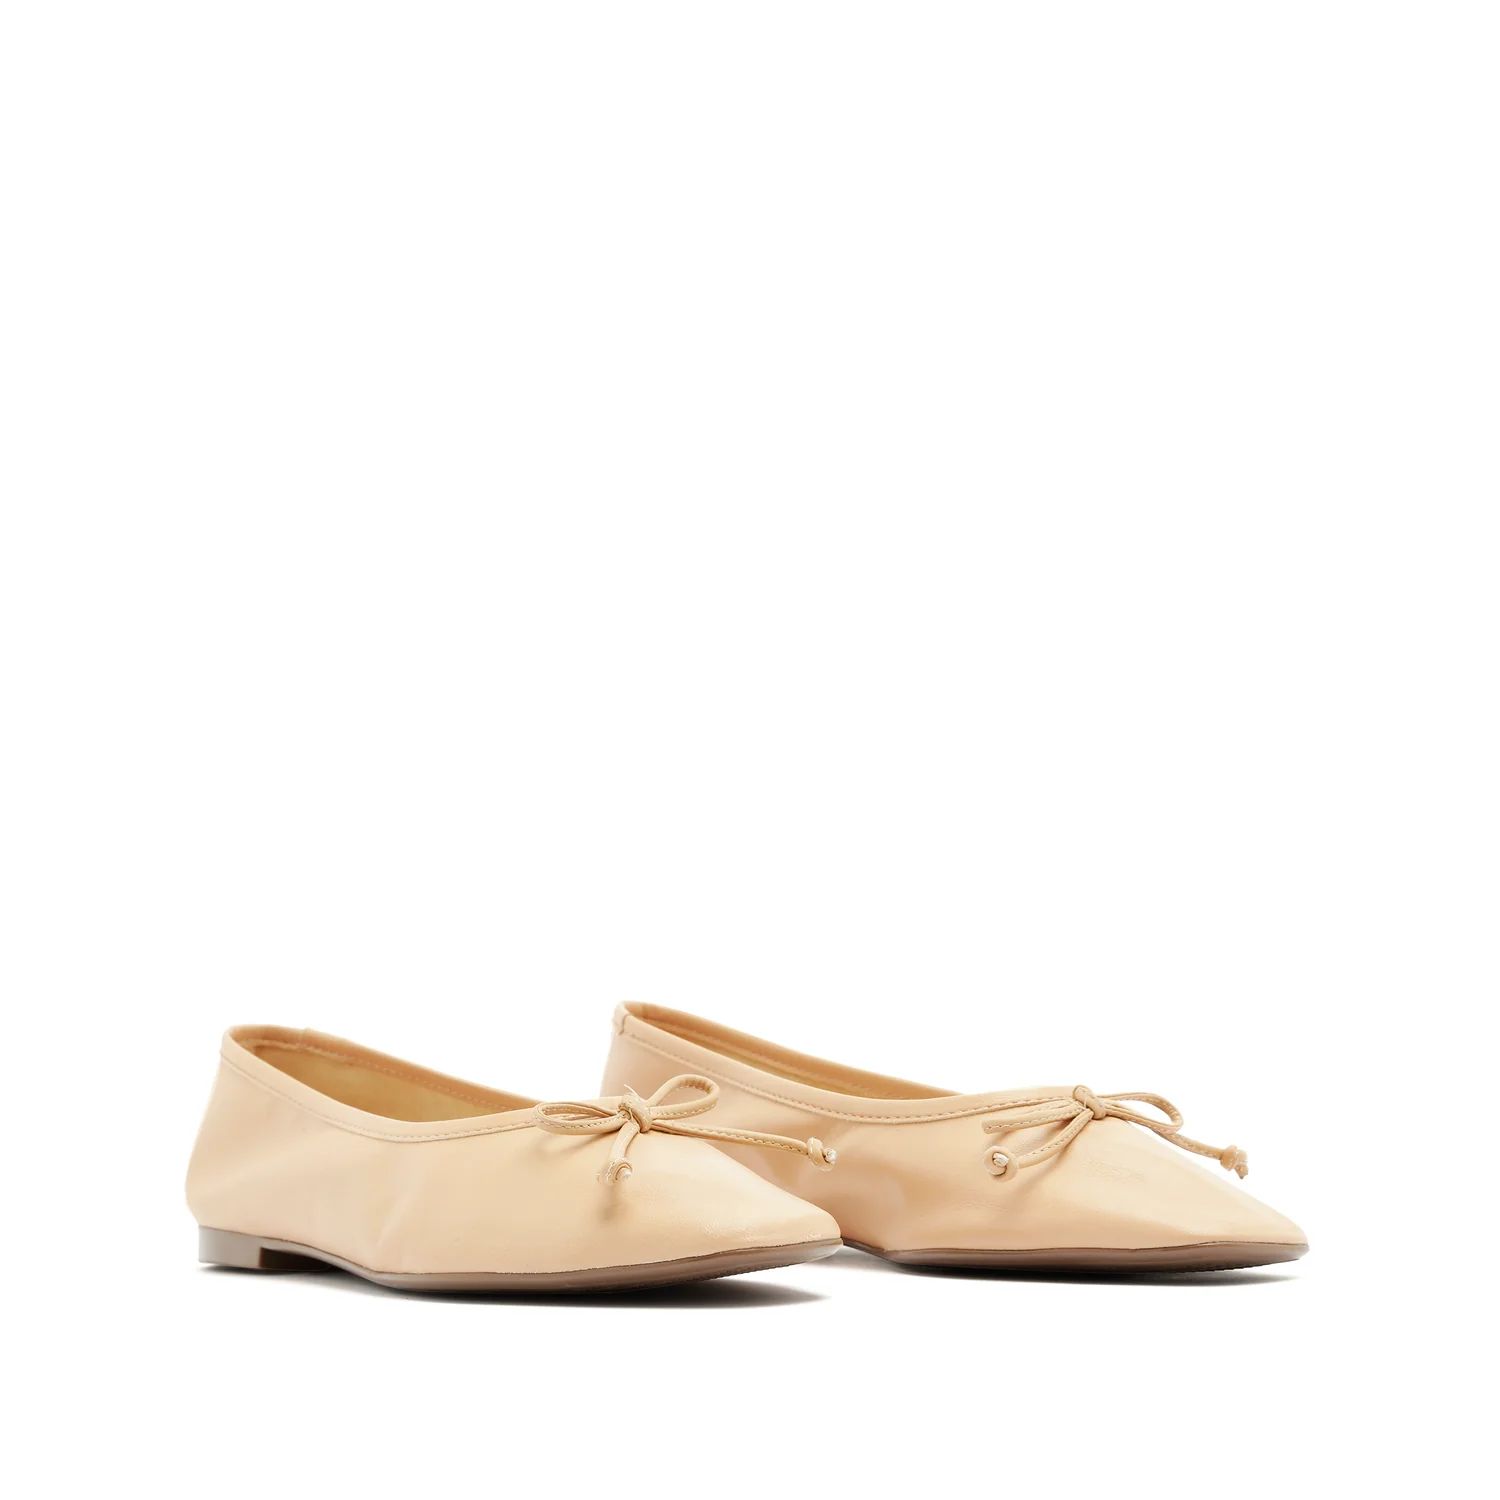 Arissa Flat in Honey Beige Leather | Schutz Shoes | Schutz Shoes (US)